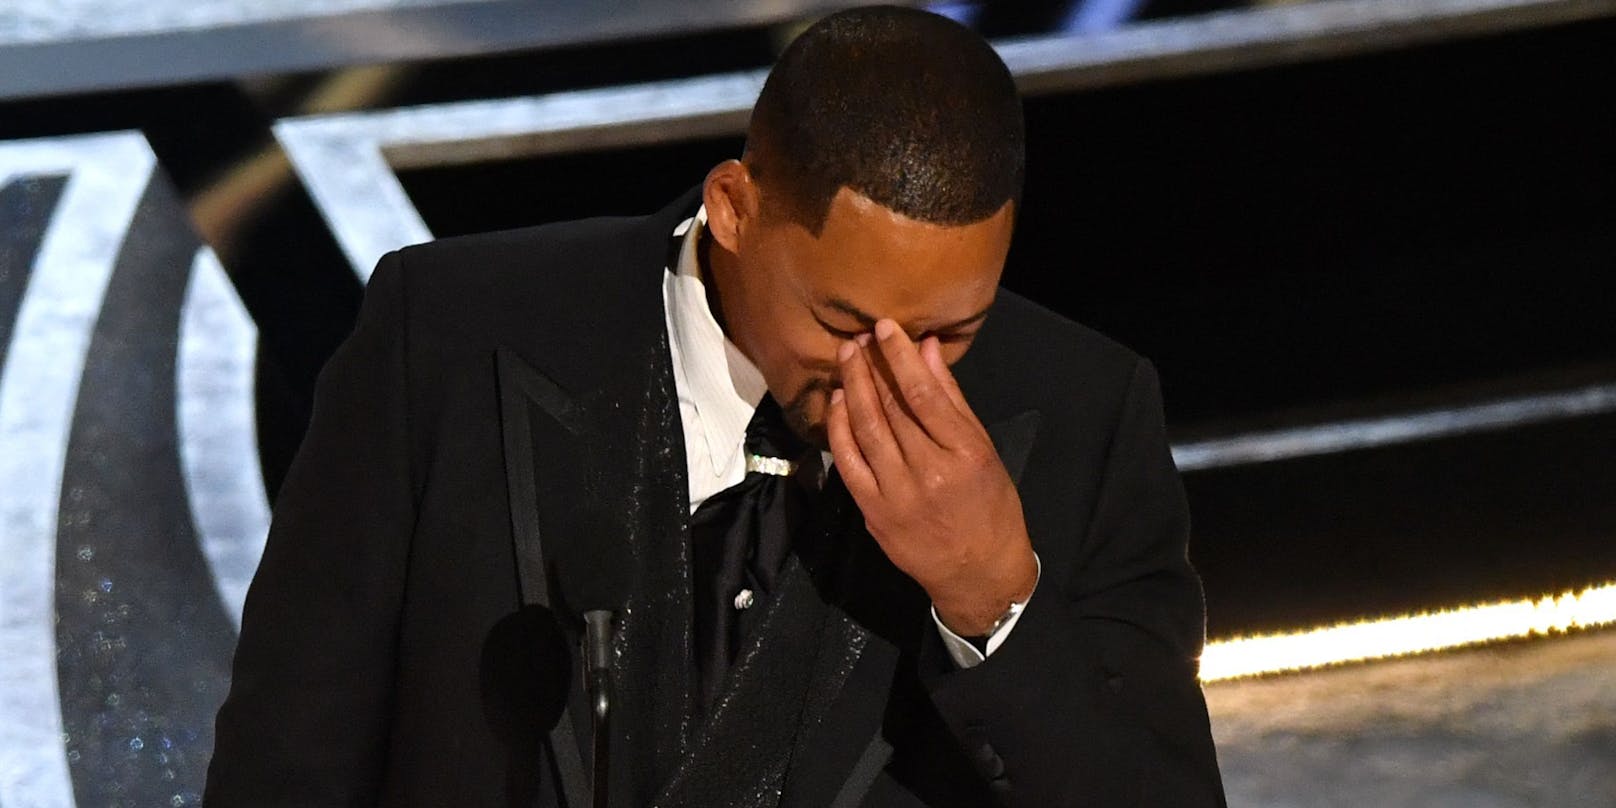 Bei seiner Oscar-Rede verlor Will Smith einige Tränen. Offenbar wurde ihm hier sein Fehltritt bewusst.